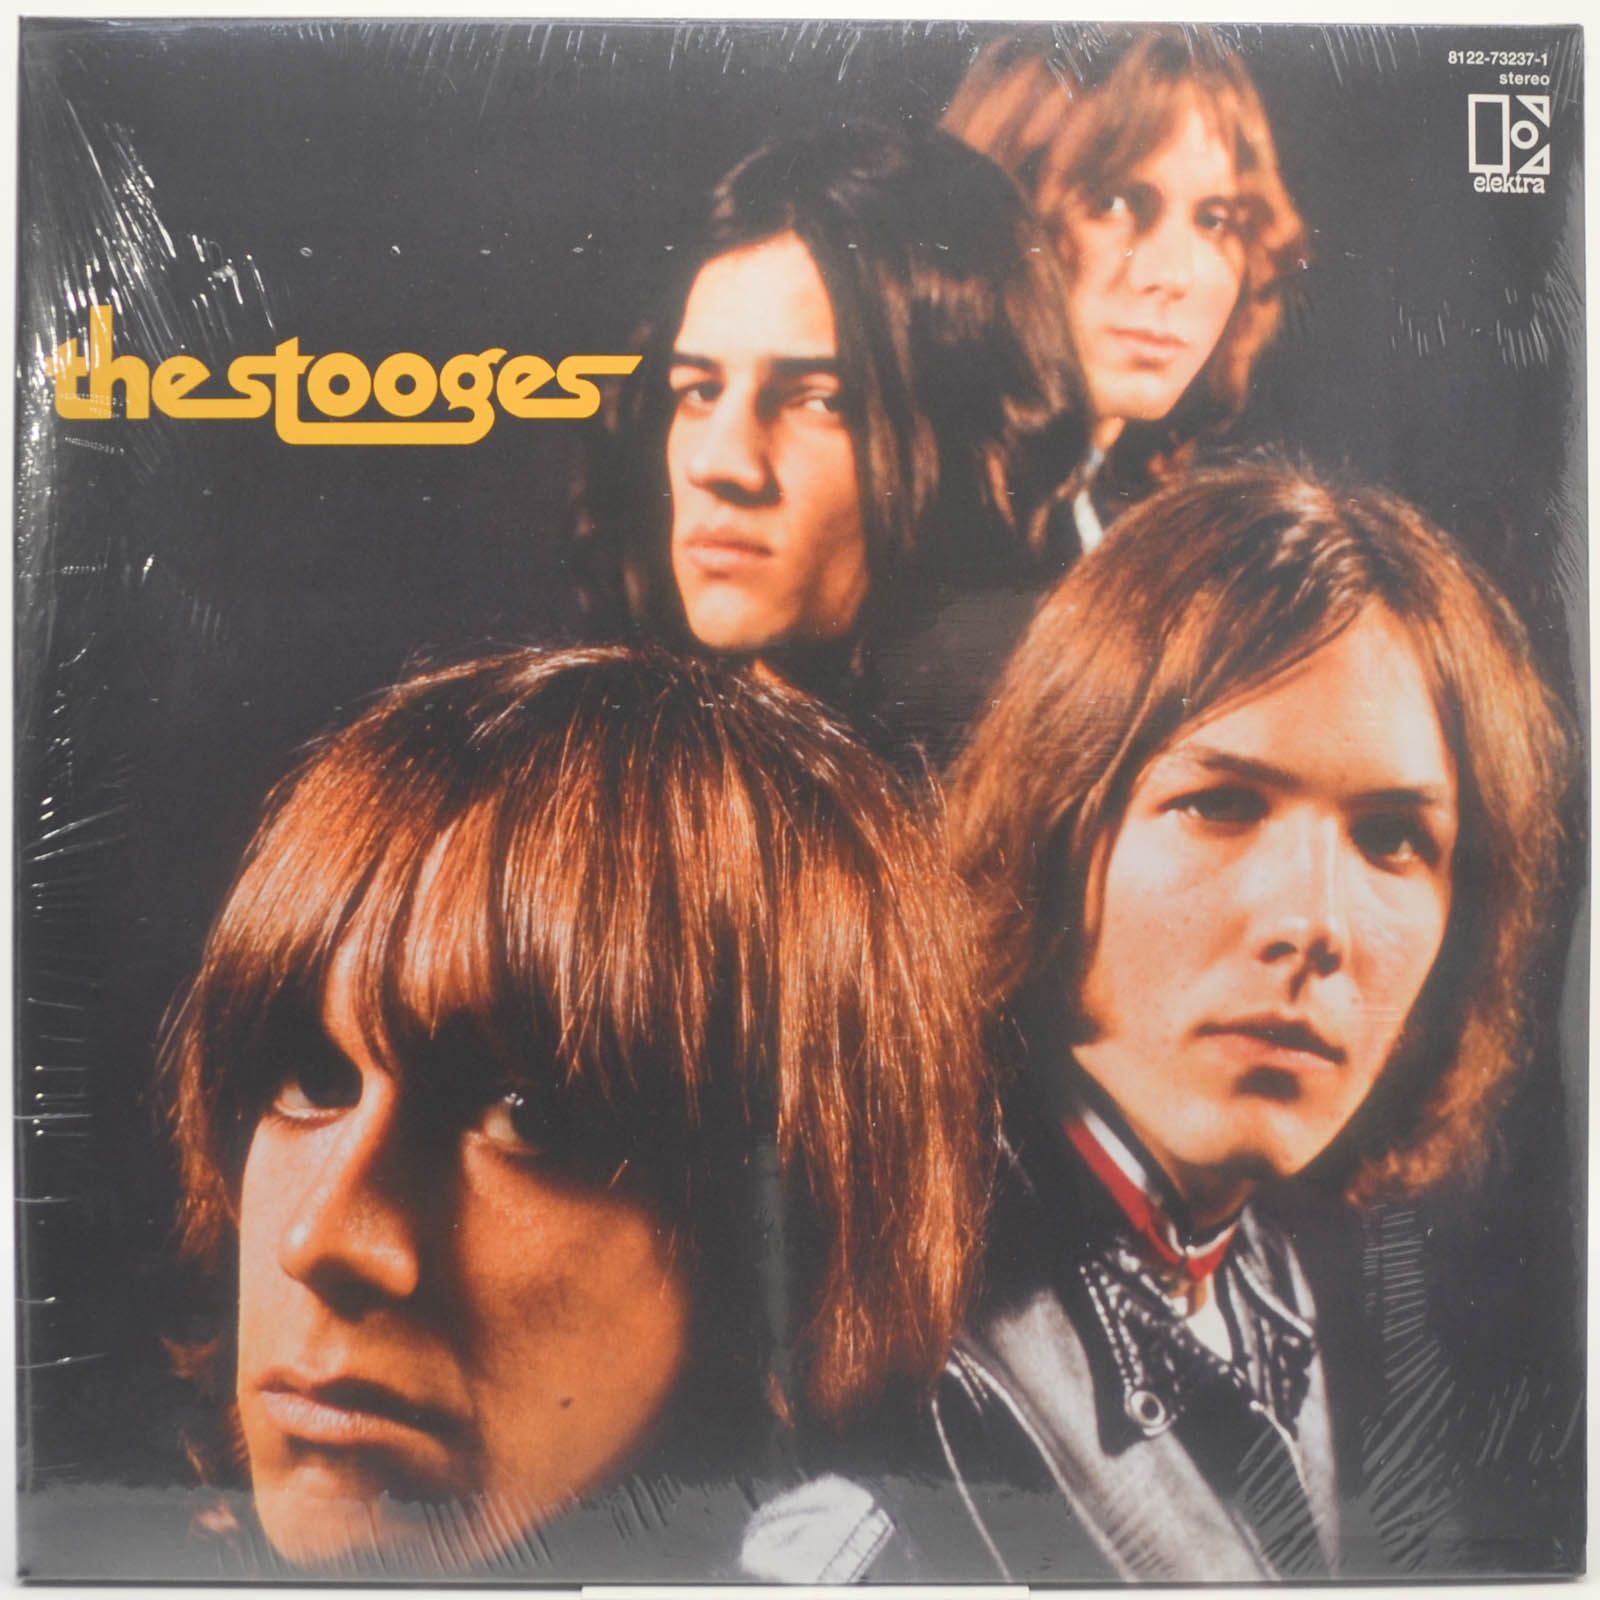 Stooges — The Stooges (2LP), 1969